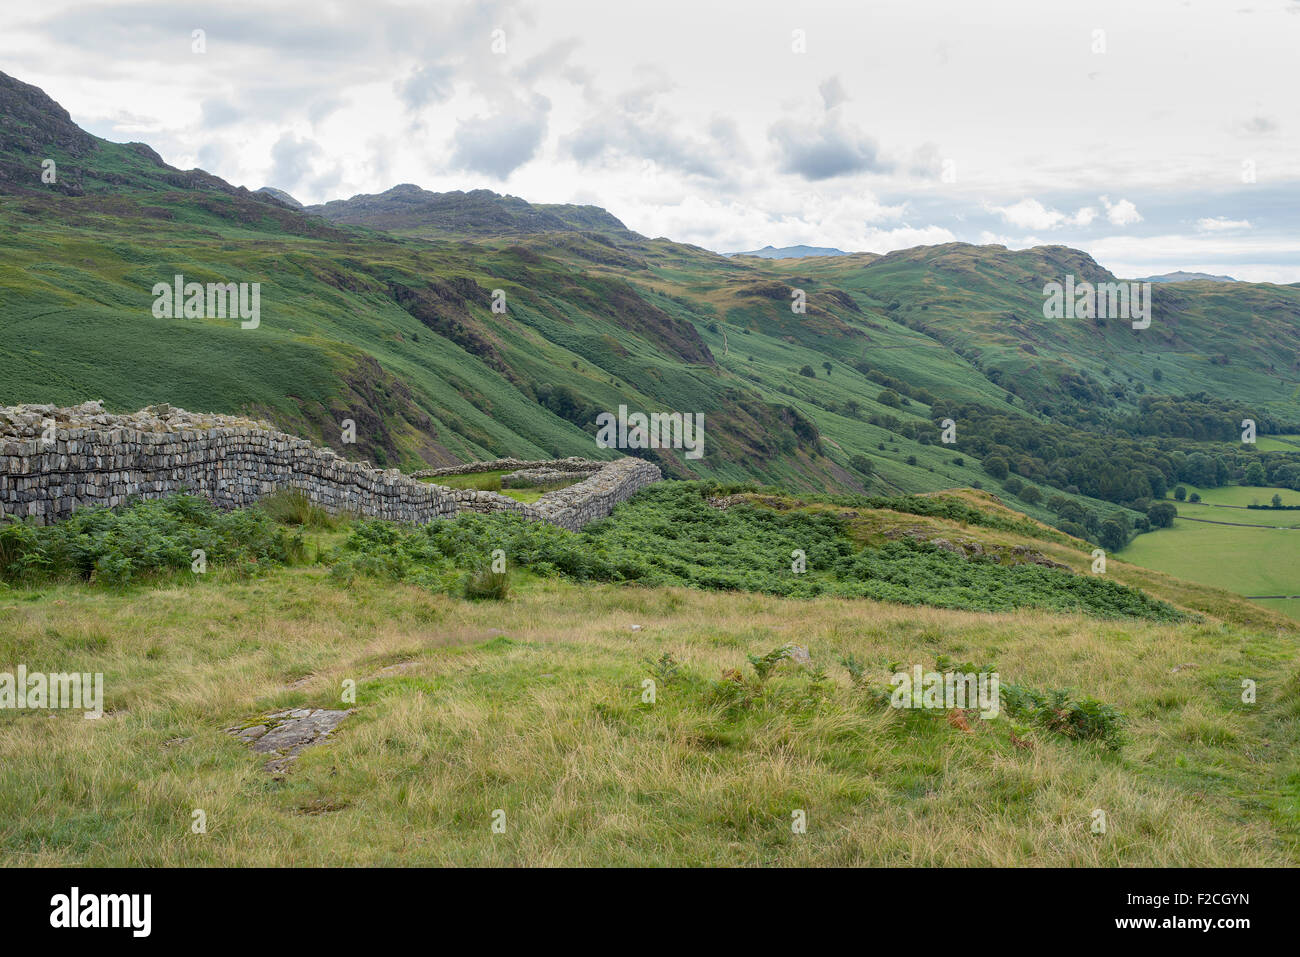 Hardknott römischen Kastells befindet sich auf dem Harknott Pass im Eskdale Tal im englischen Lake District, Cumbria, Großbritannien. Stockfoto